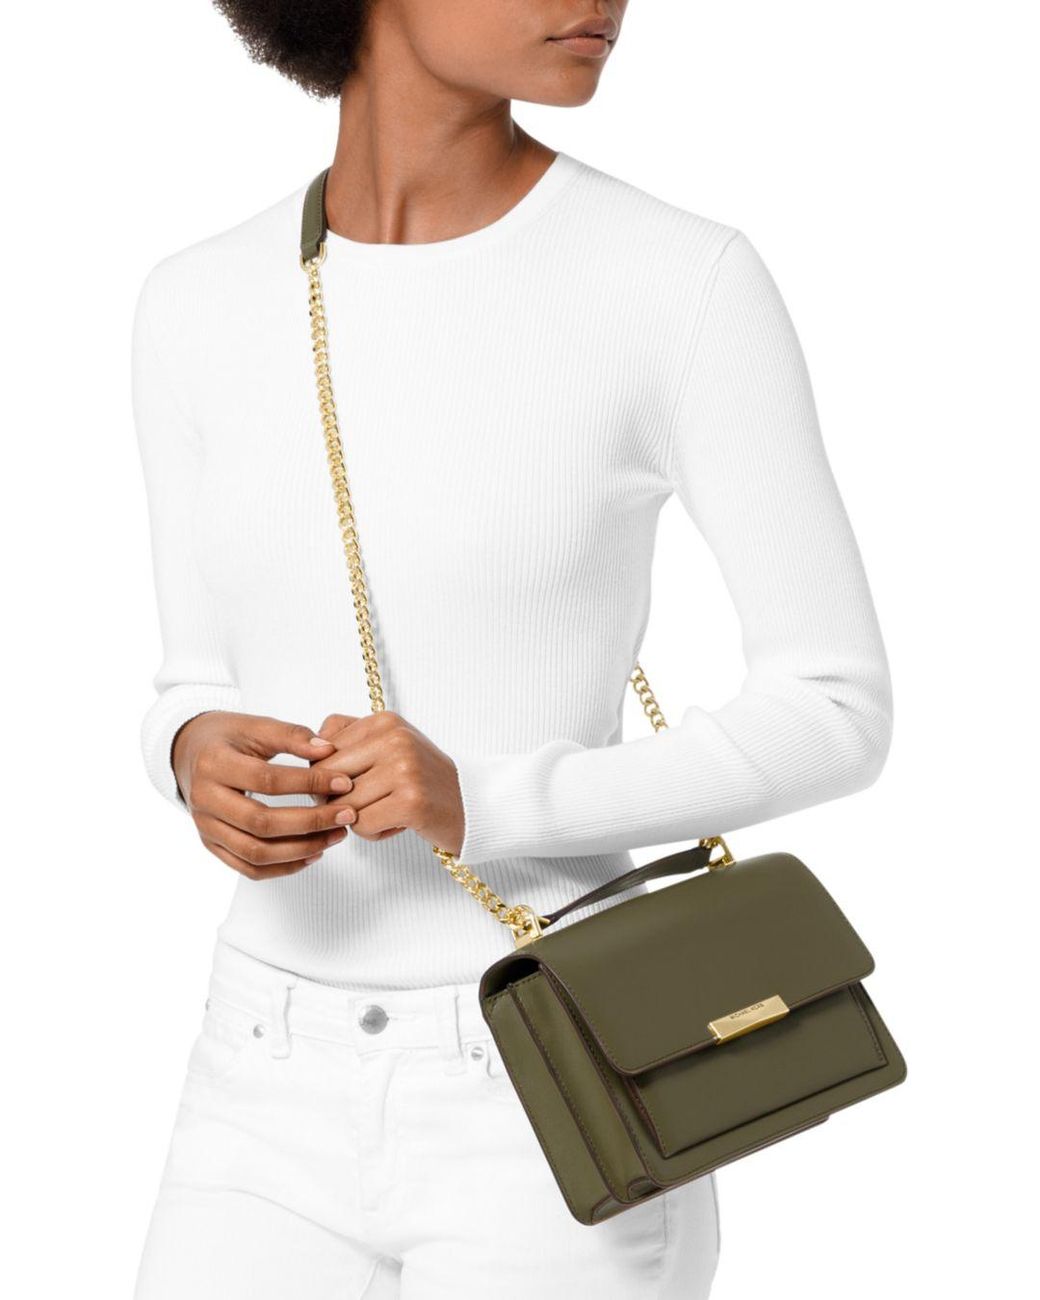 Michael Kors Jade Large Leather Gusset Shoulder Bag in White | Lyst